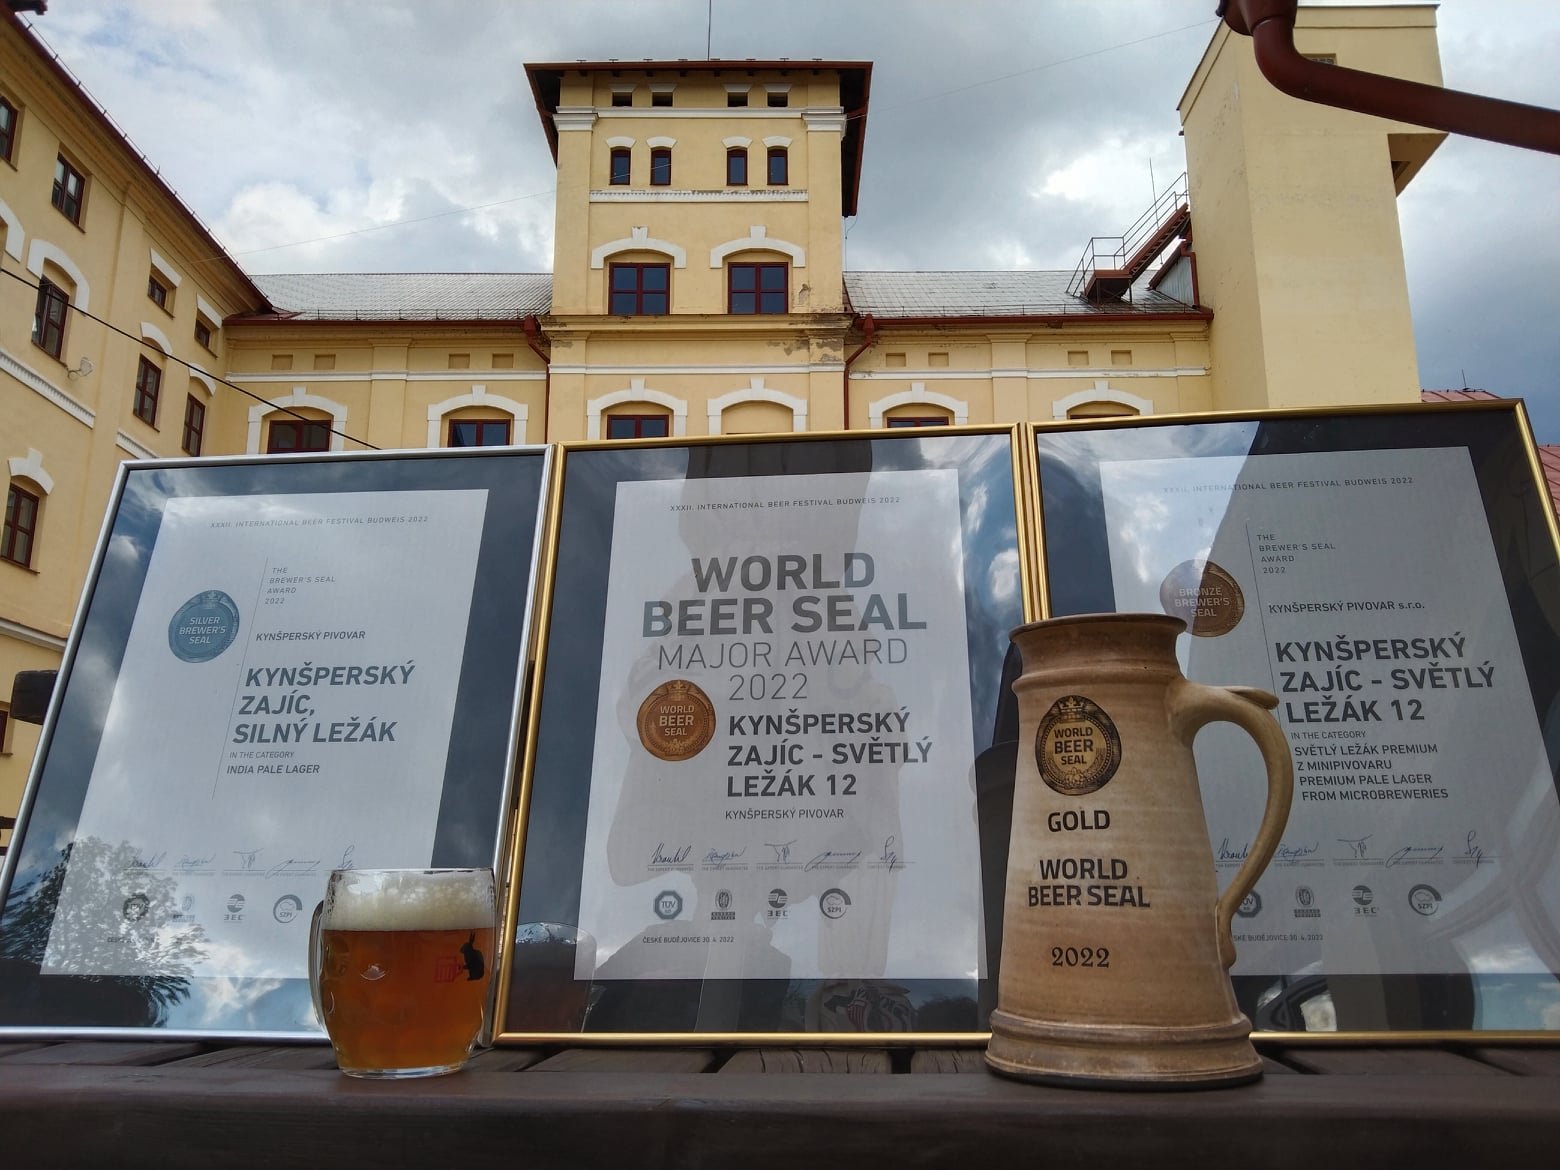 Během minulého týdne probíhaly degustace 32.ročníku mezinárodní degustační soutěže Pivní Pečeť v Českých Budějovicích